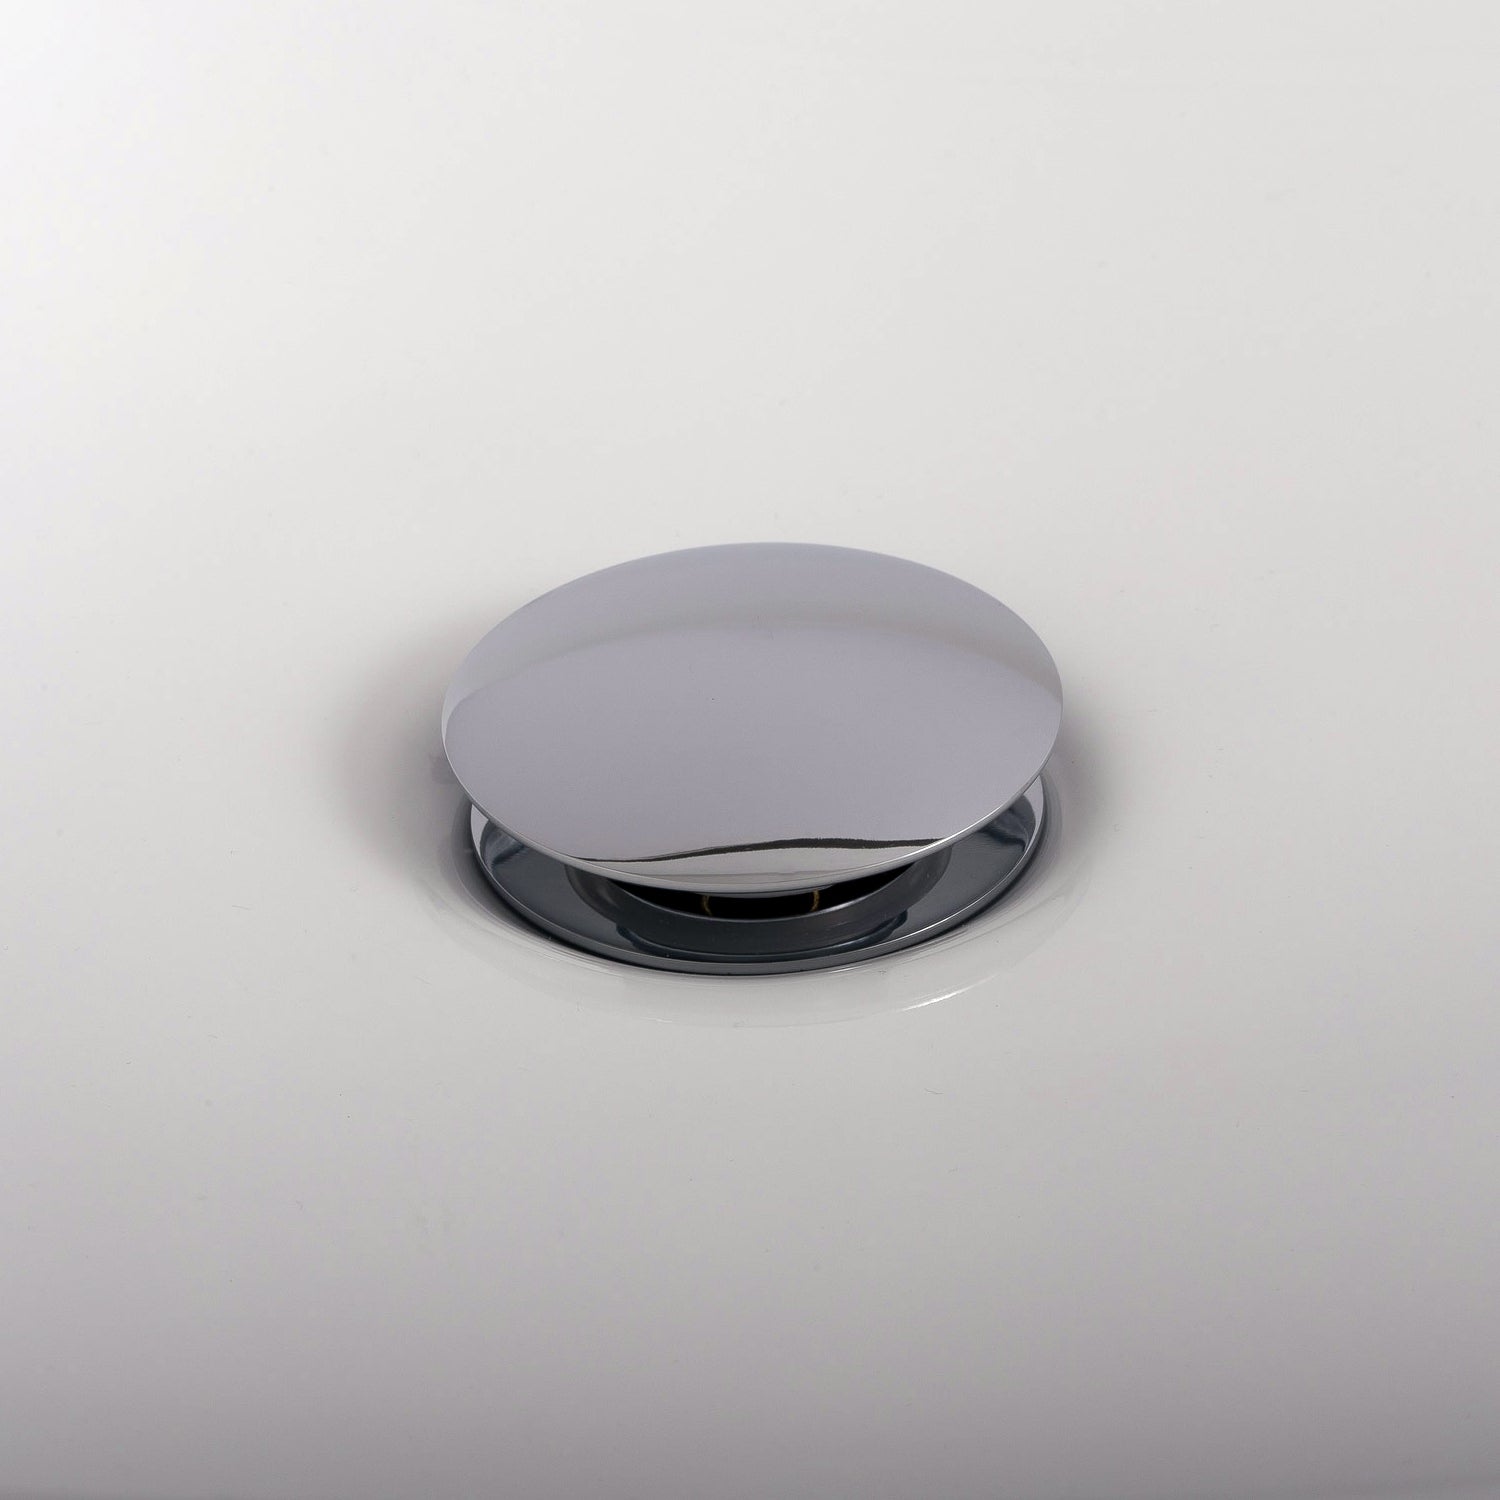 DAX Round Vanity Sink Pop up Drain, Brass Body, 2-5/8 x 8-5/8 Inches (DAX-82006)